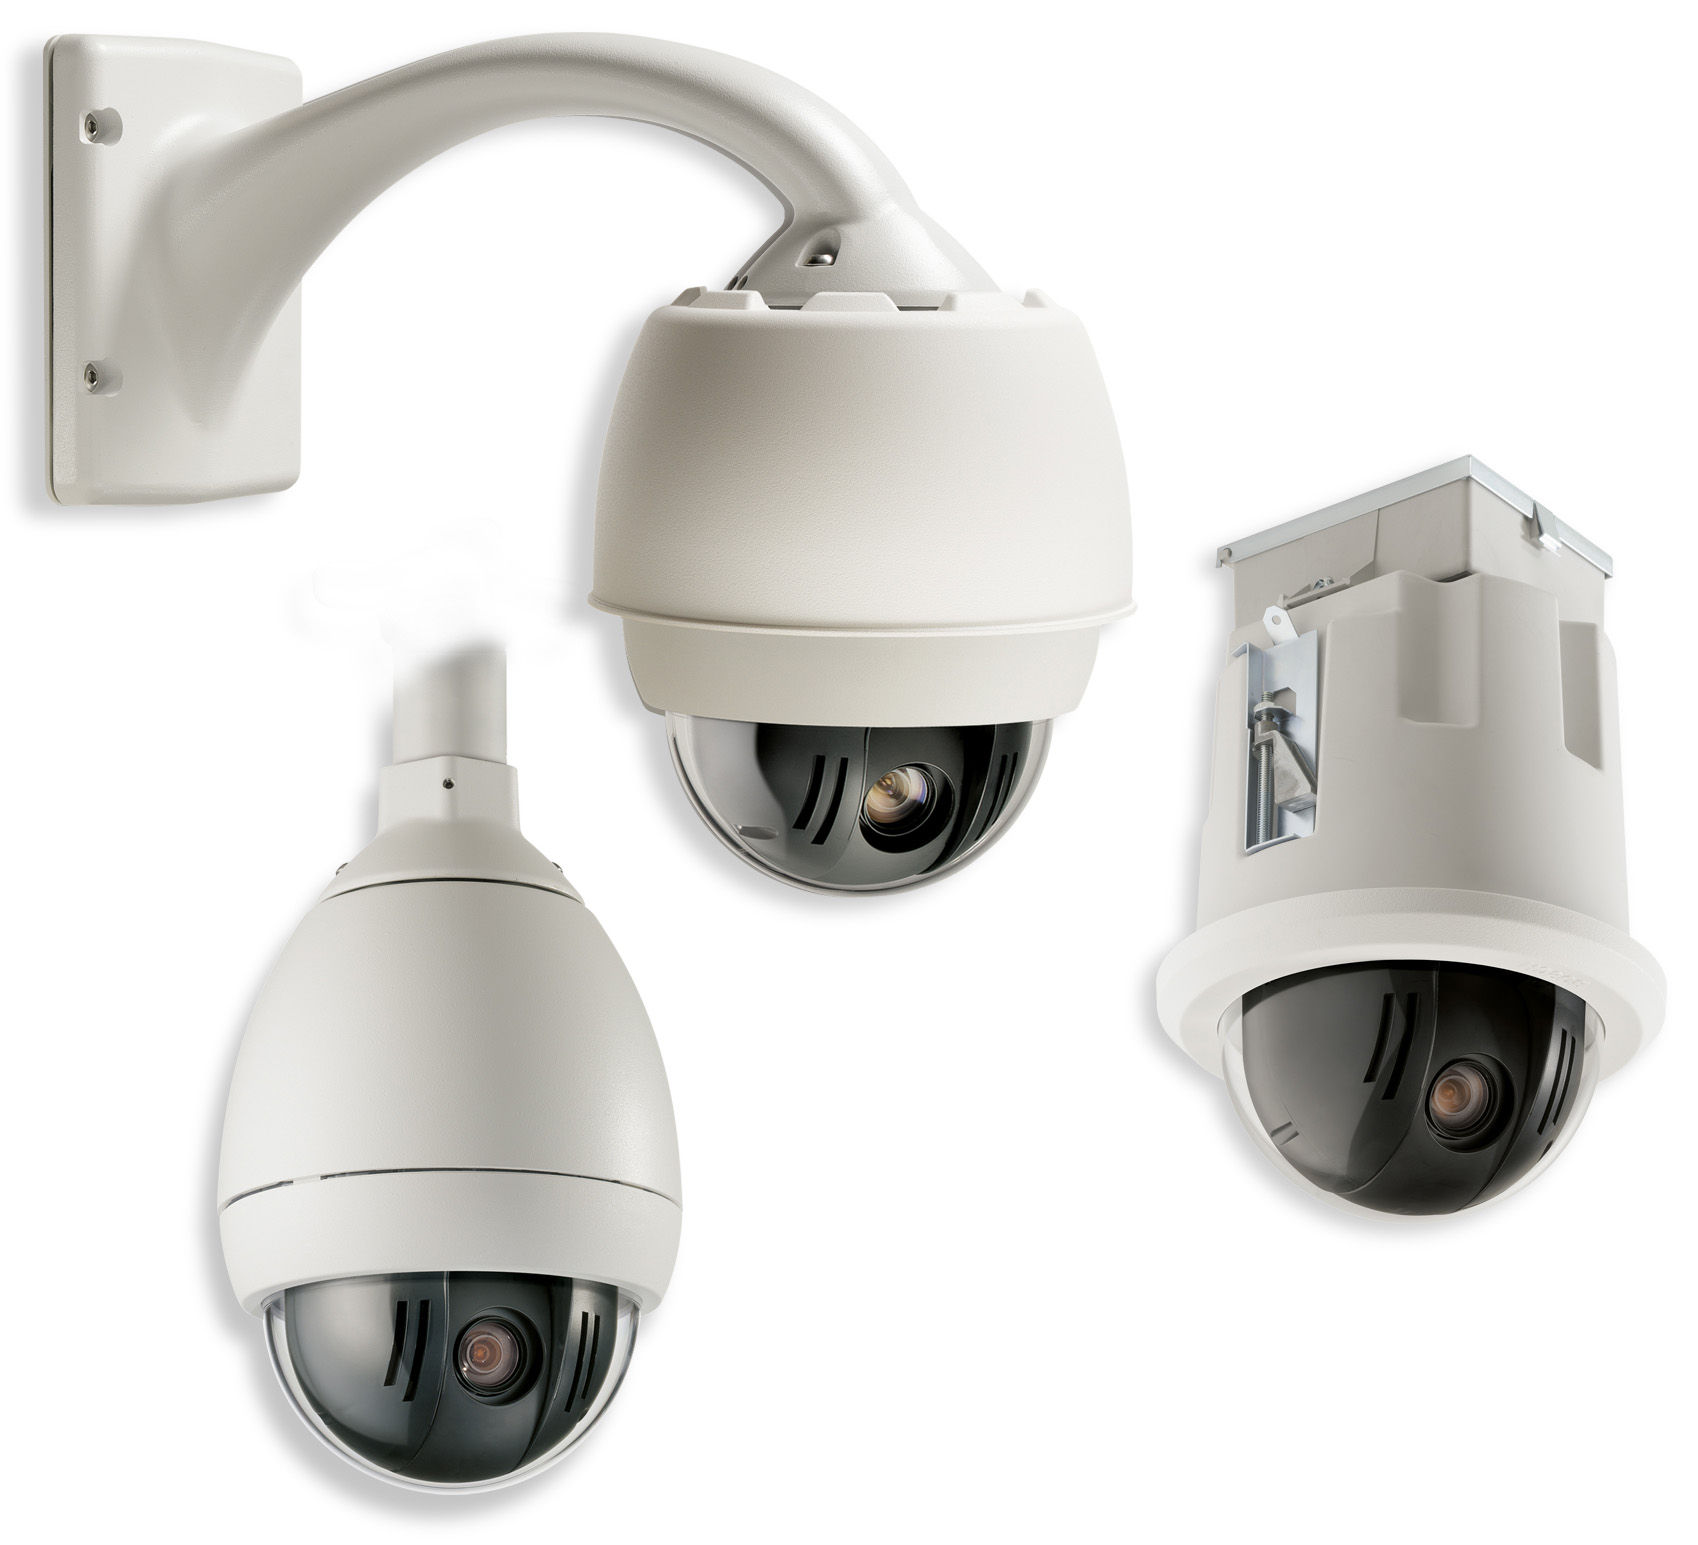 CCTV AutoDome 500i Series Sistema de Cámara Domo Móvil Inteligente AutoDome 500i Series Sistema de Cámara Domo Móvil Inteligente Módulos de CPU, cámaras, carcasas, comunicaciones y soportes